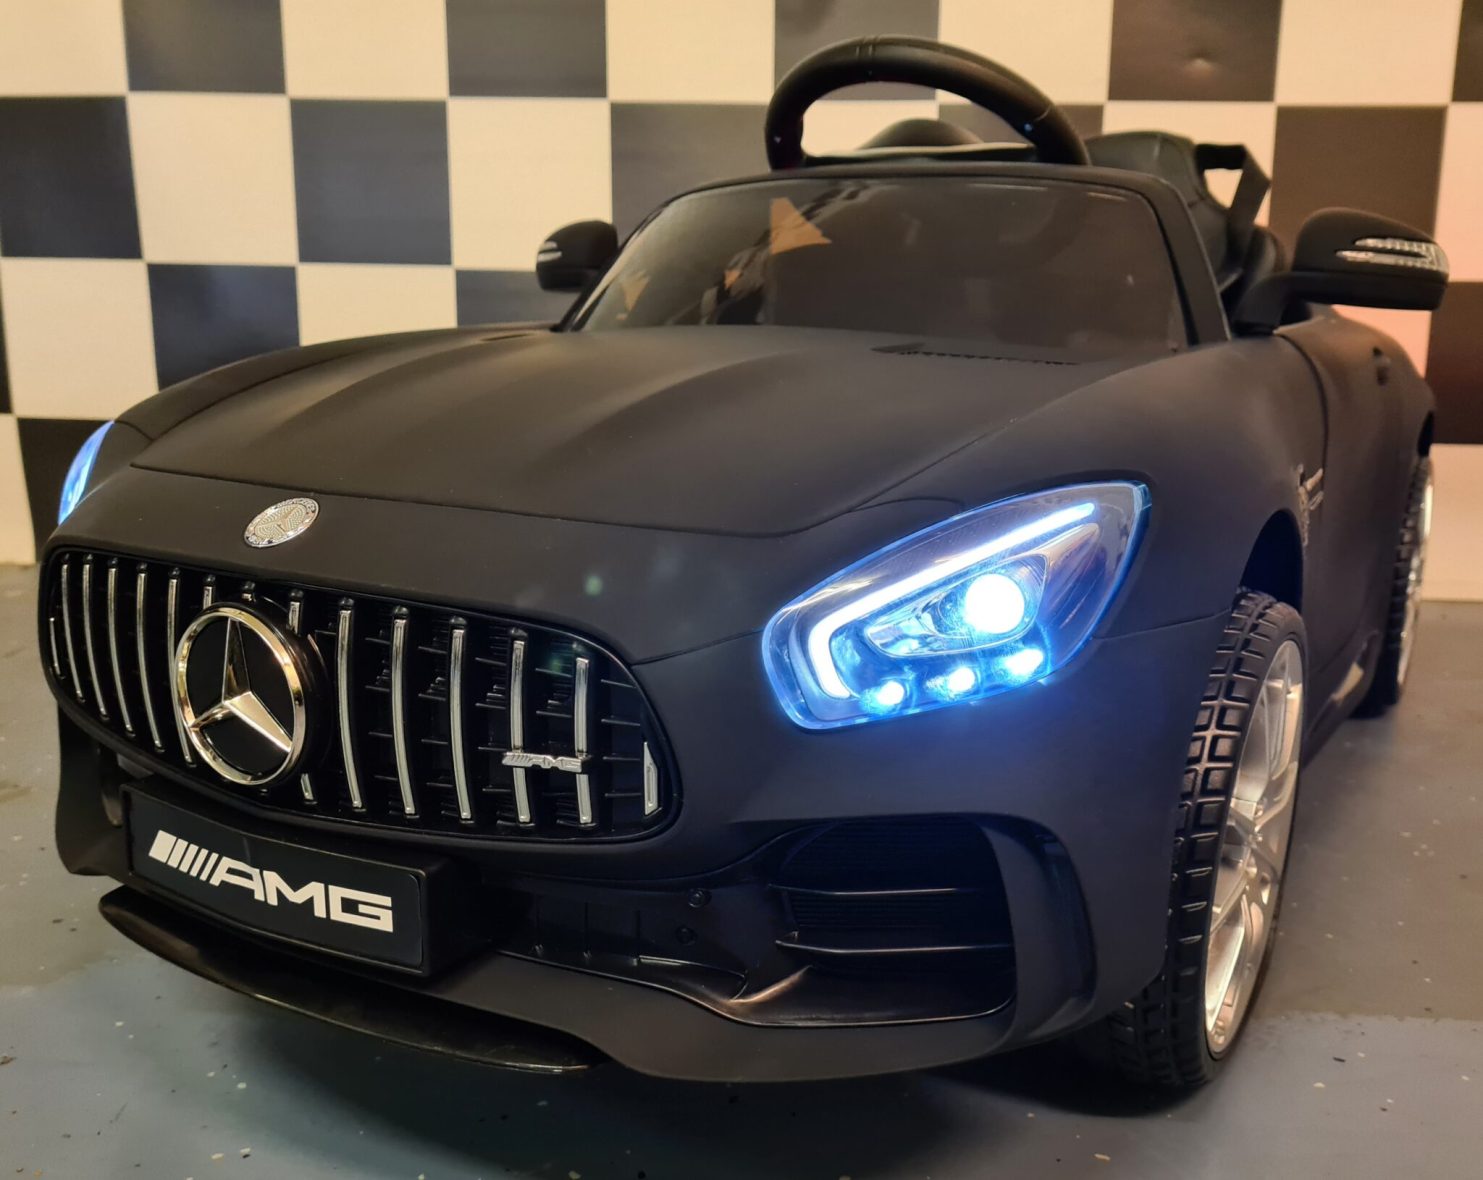 Mercedes Gtr Battery Children’s Car Matt Black 12 volt with Rc